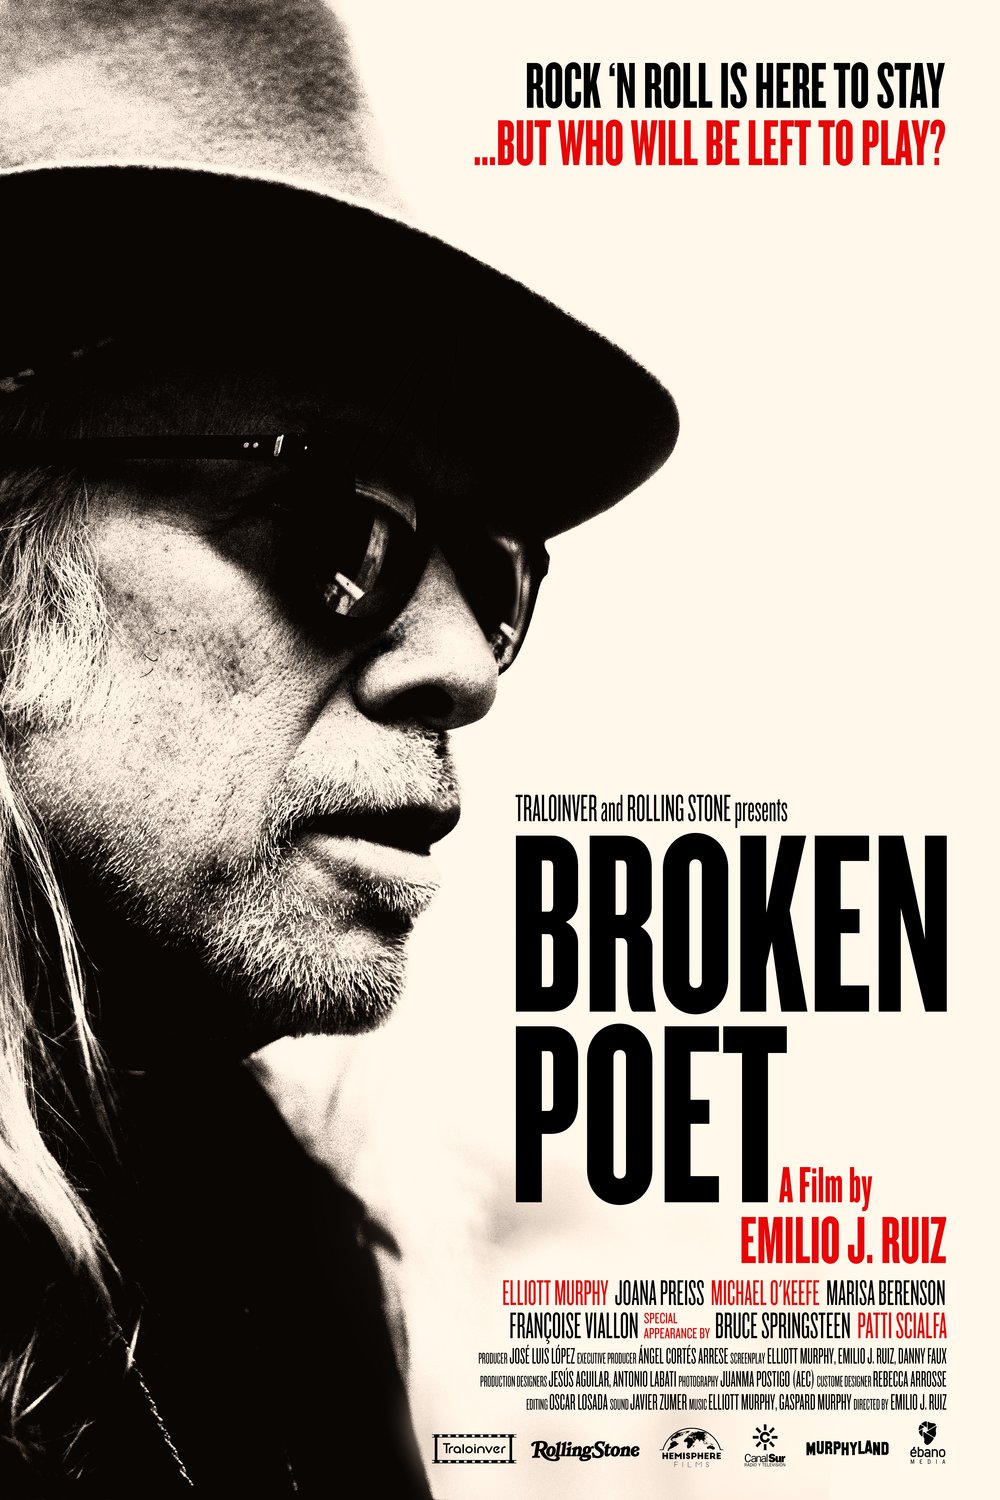 Poster of the movie Broken Poet